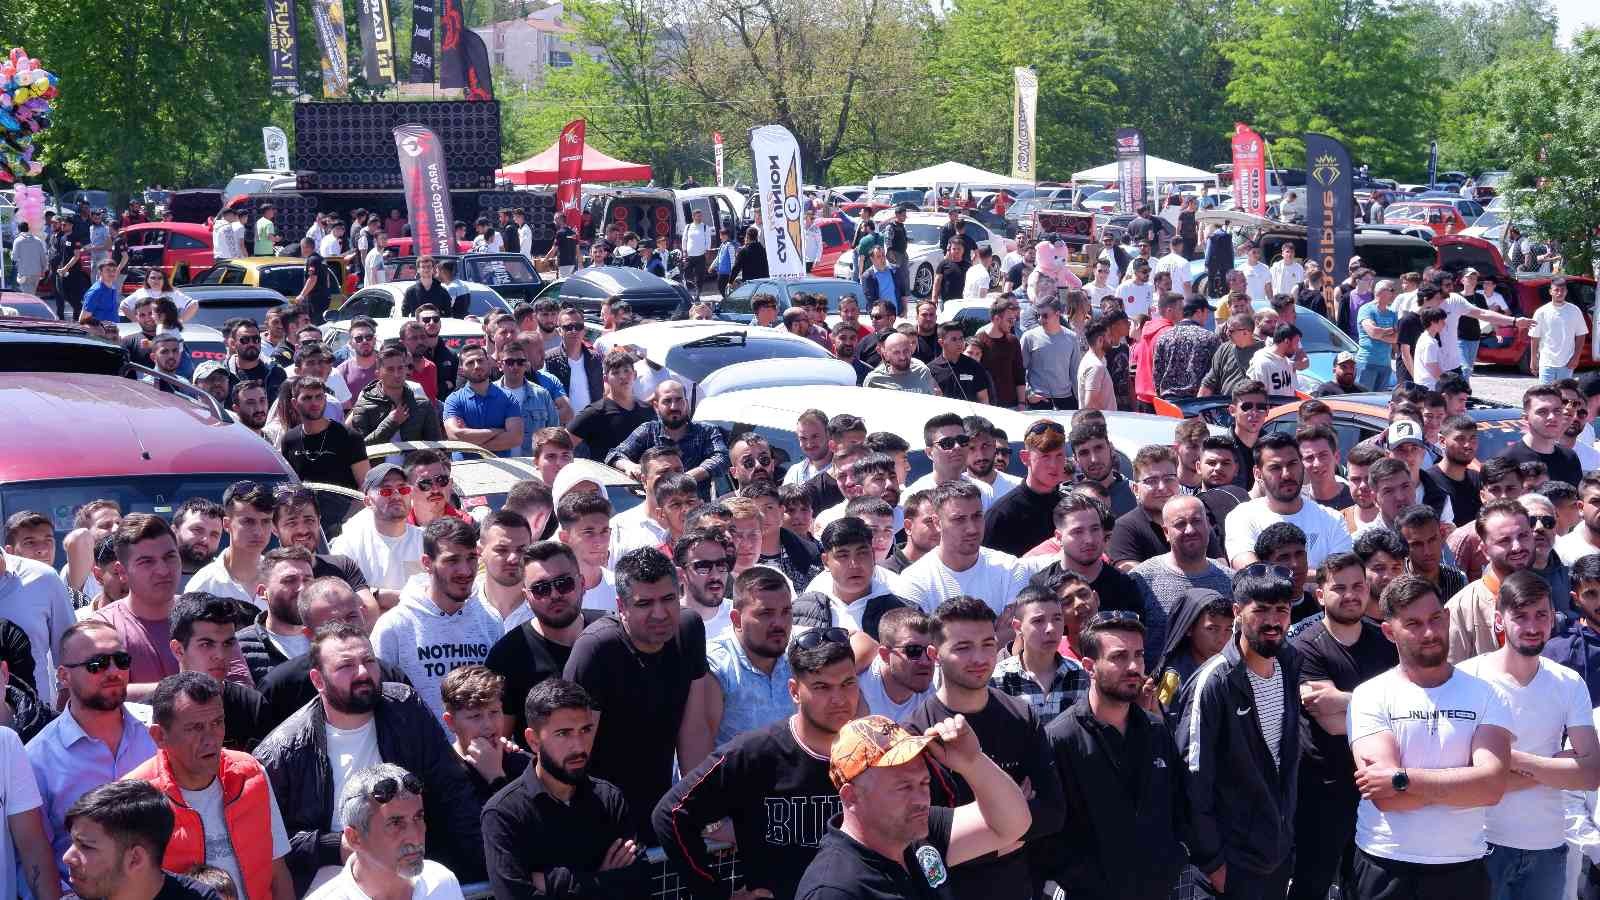 Sahiplerinin aldıktan sonra değerinden fazla para harcayarak modifiye ettikleri 800’den fazla araç, Edirne’de modifiye severlerin beğenisine ...